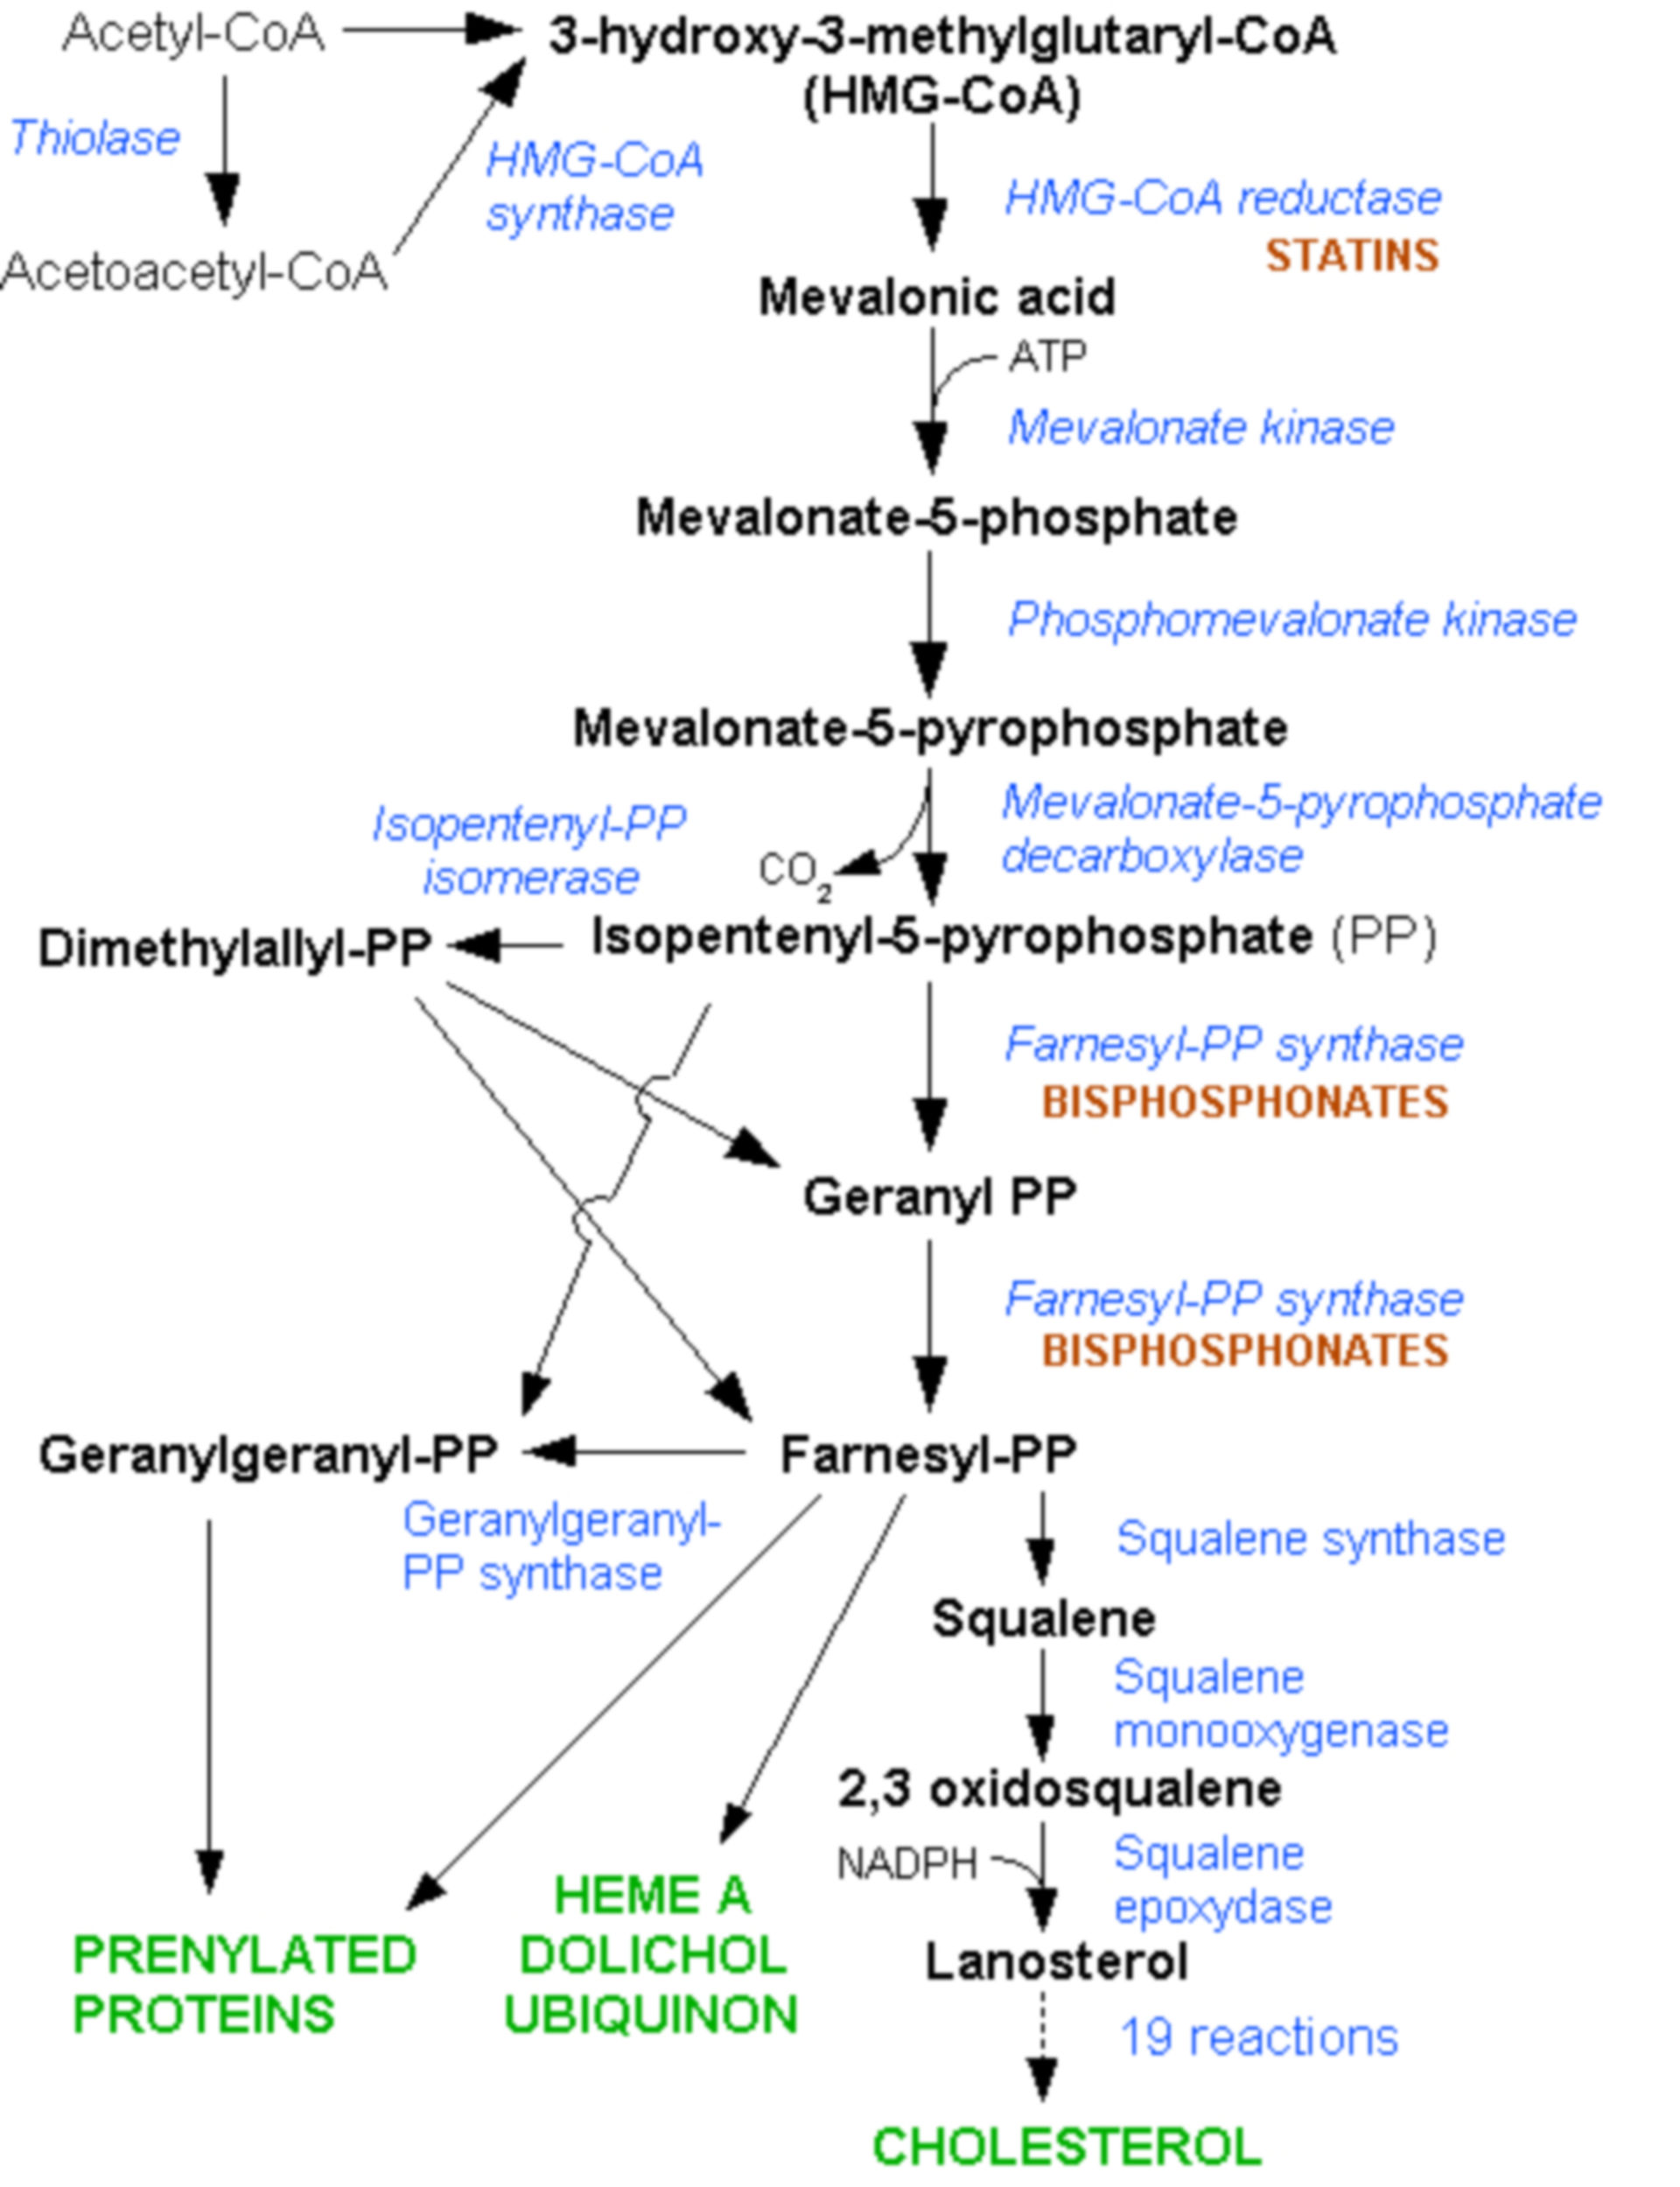 Sistema de señales de la HMG-CoA reductasis